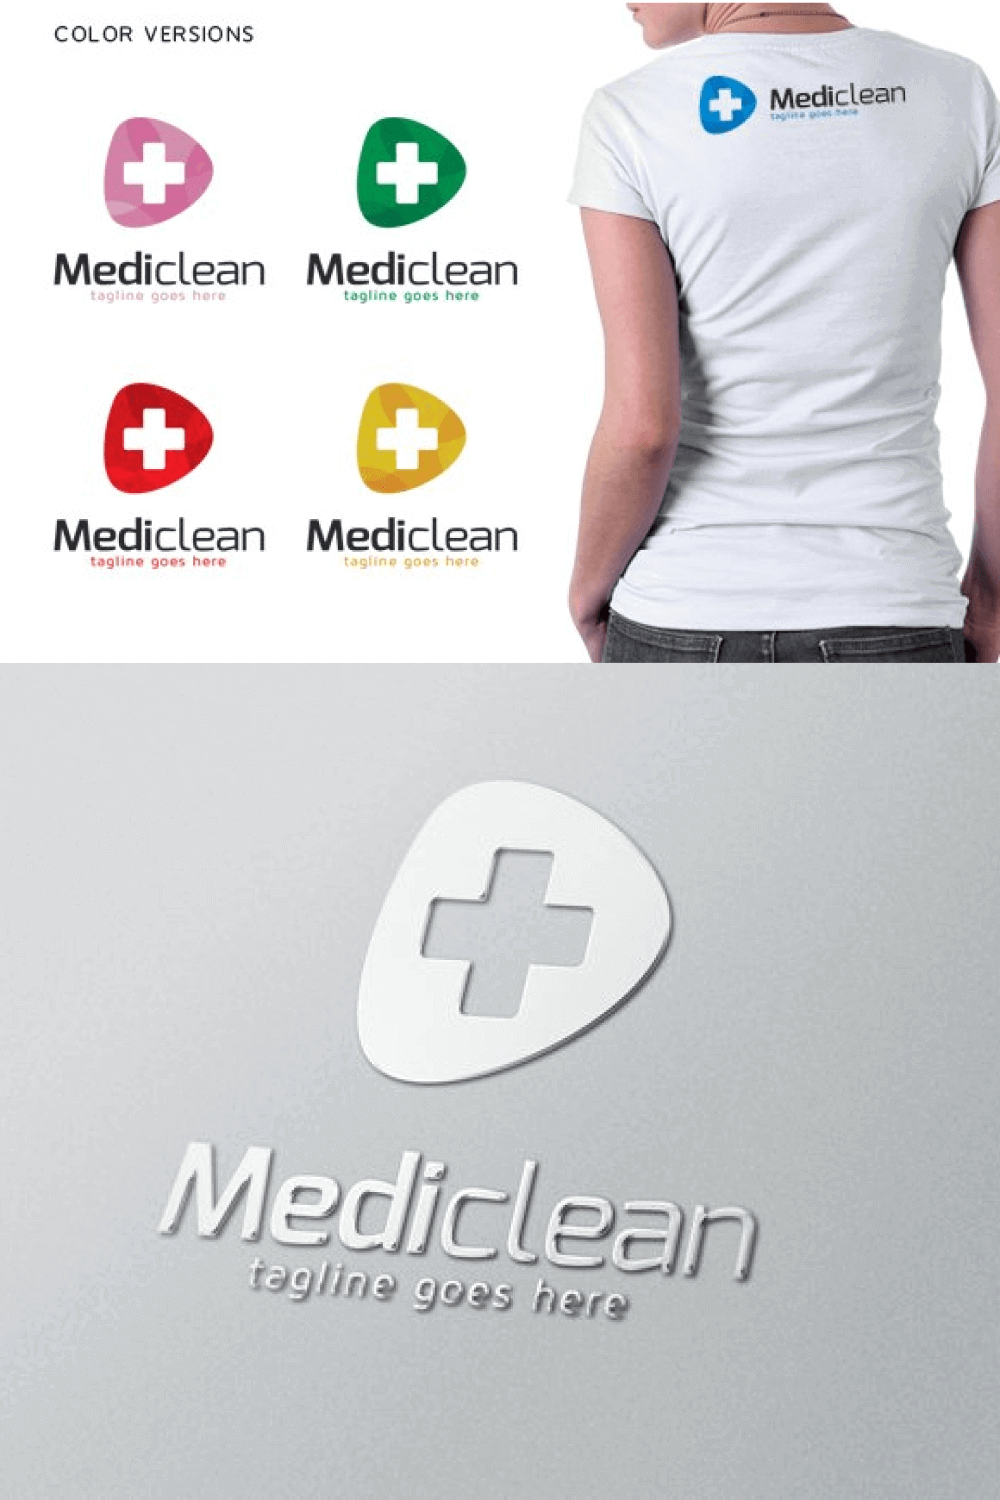 Mediclean in Silver Color.